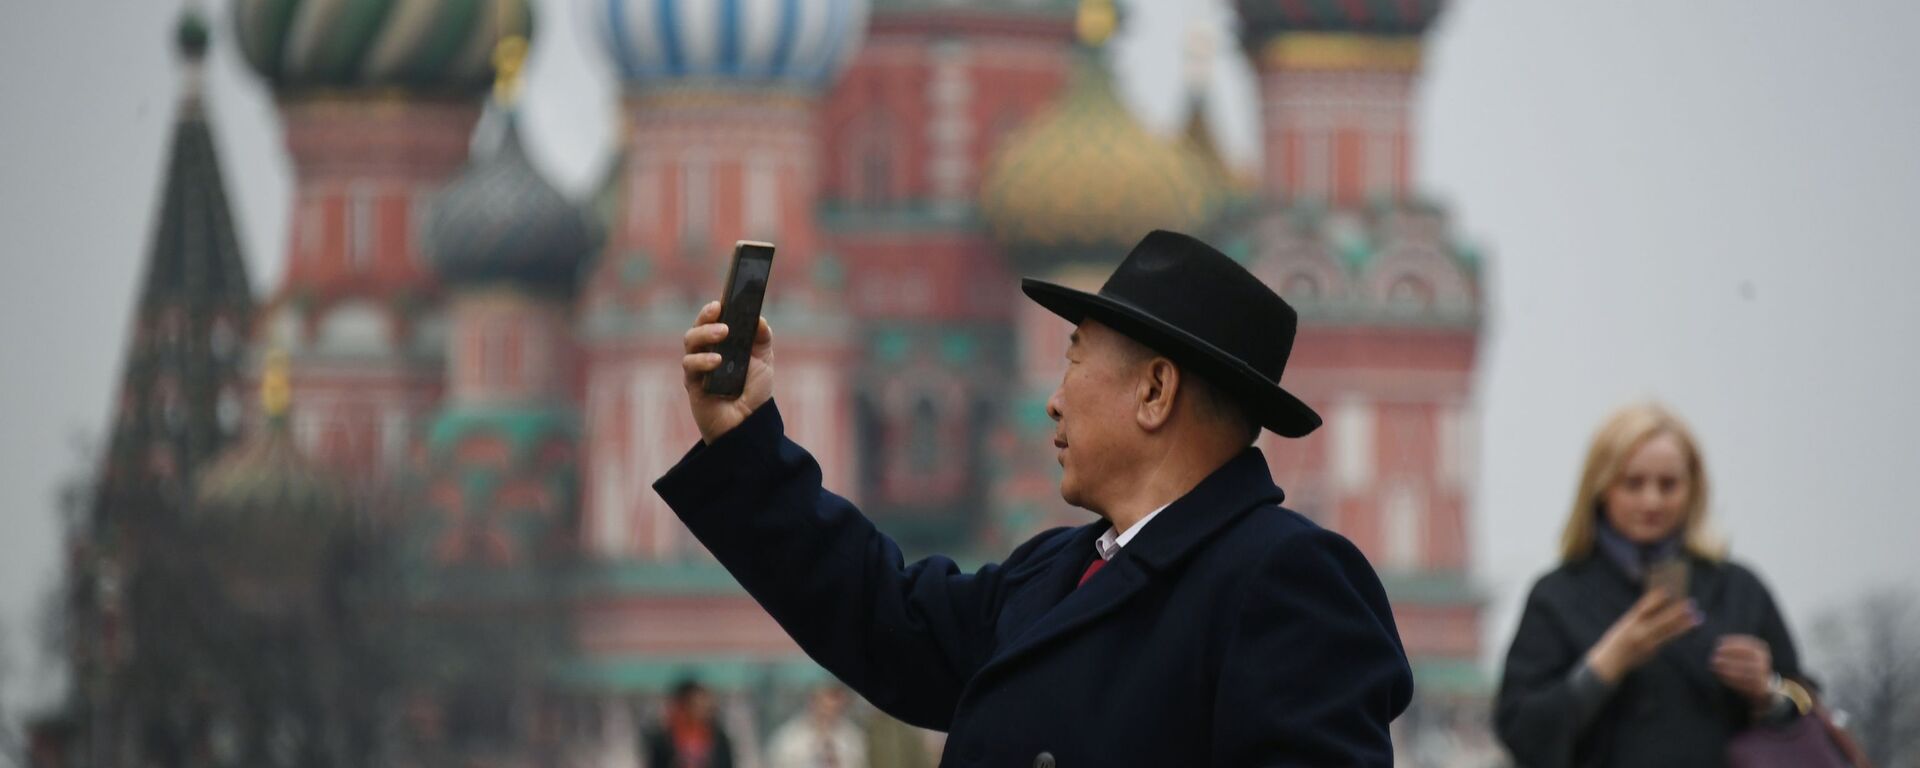 Турист фотографируется на Красной площади в Москве, на фоне храма Василия Блаженного - Sputnik Lietuva, 1920, 01.12.2020